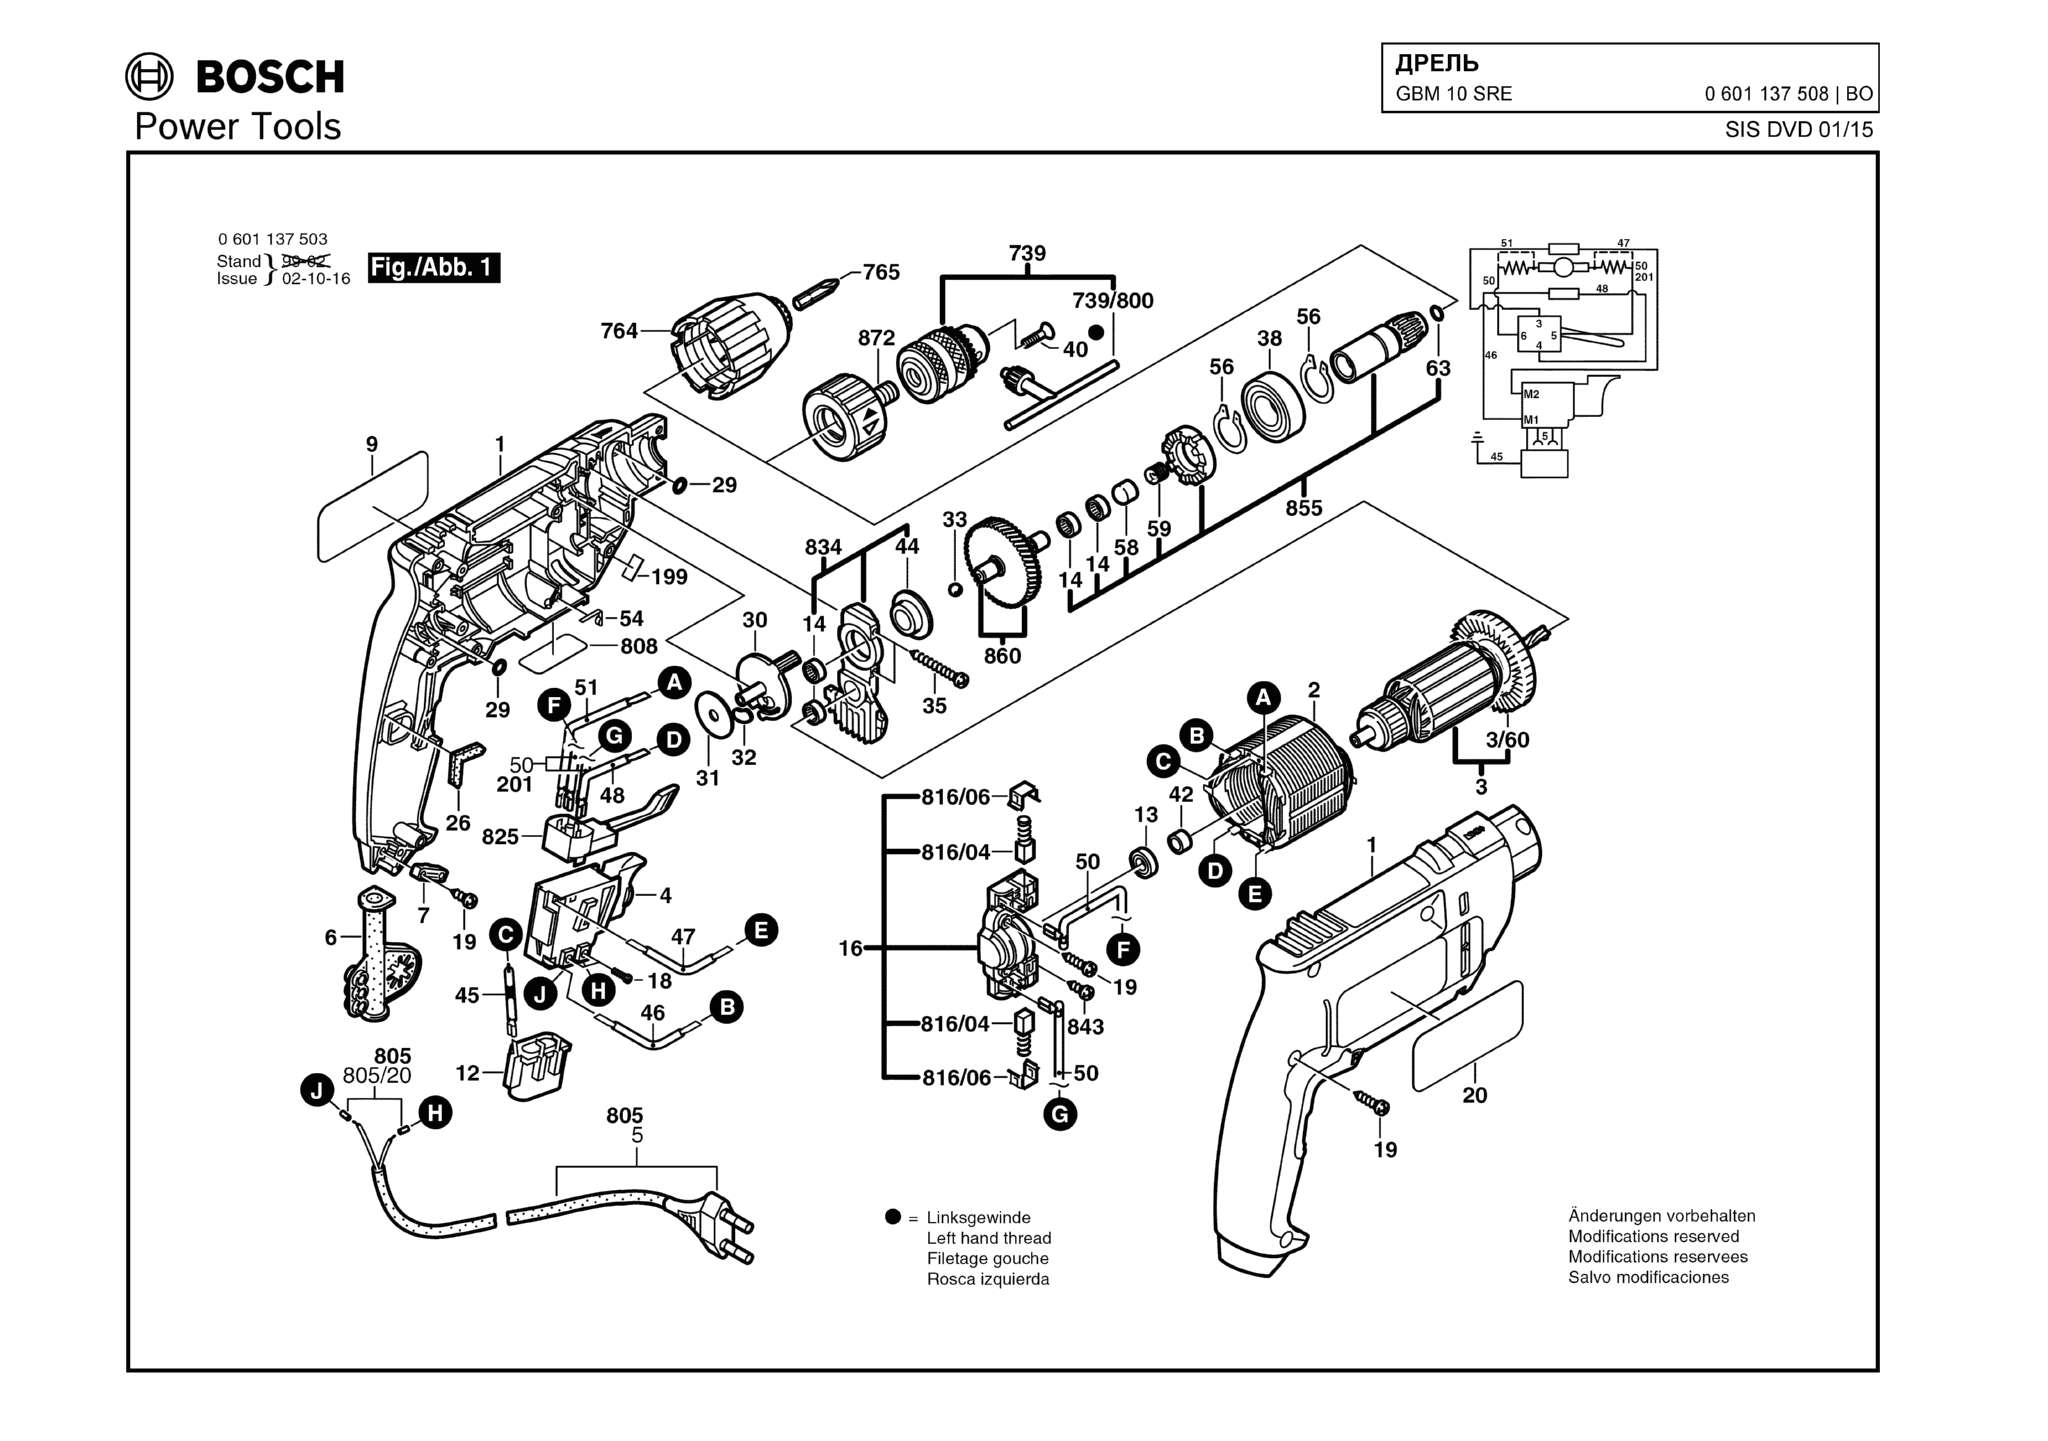 Запчасти, схема и деталировка Bosch GBM 10 SRE (ТИП 0601137508)